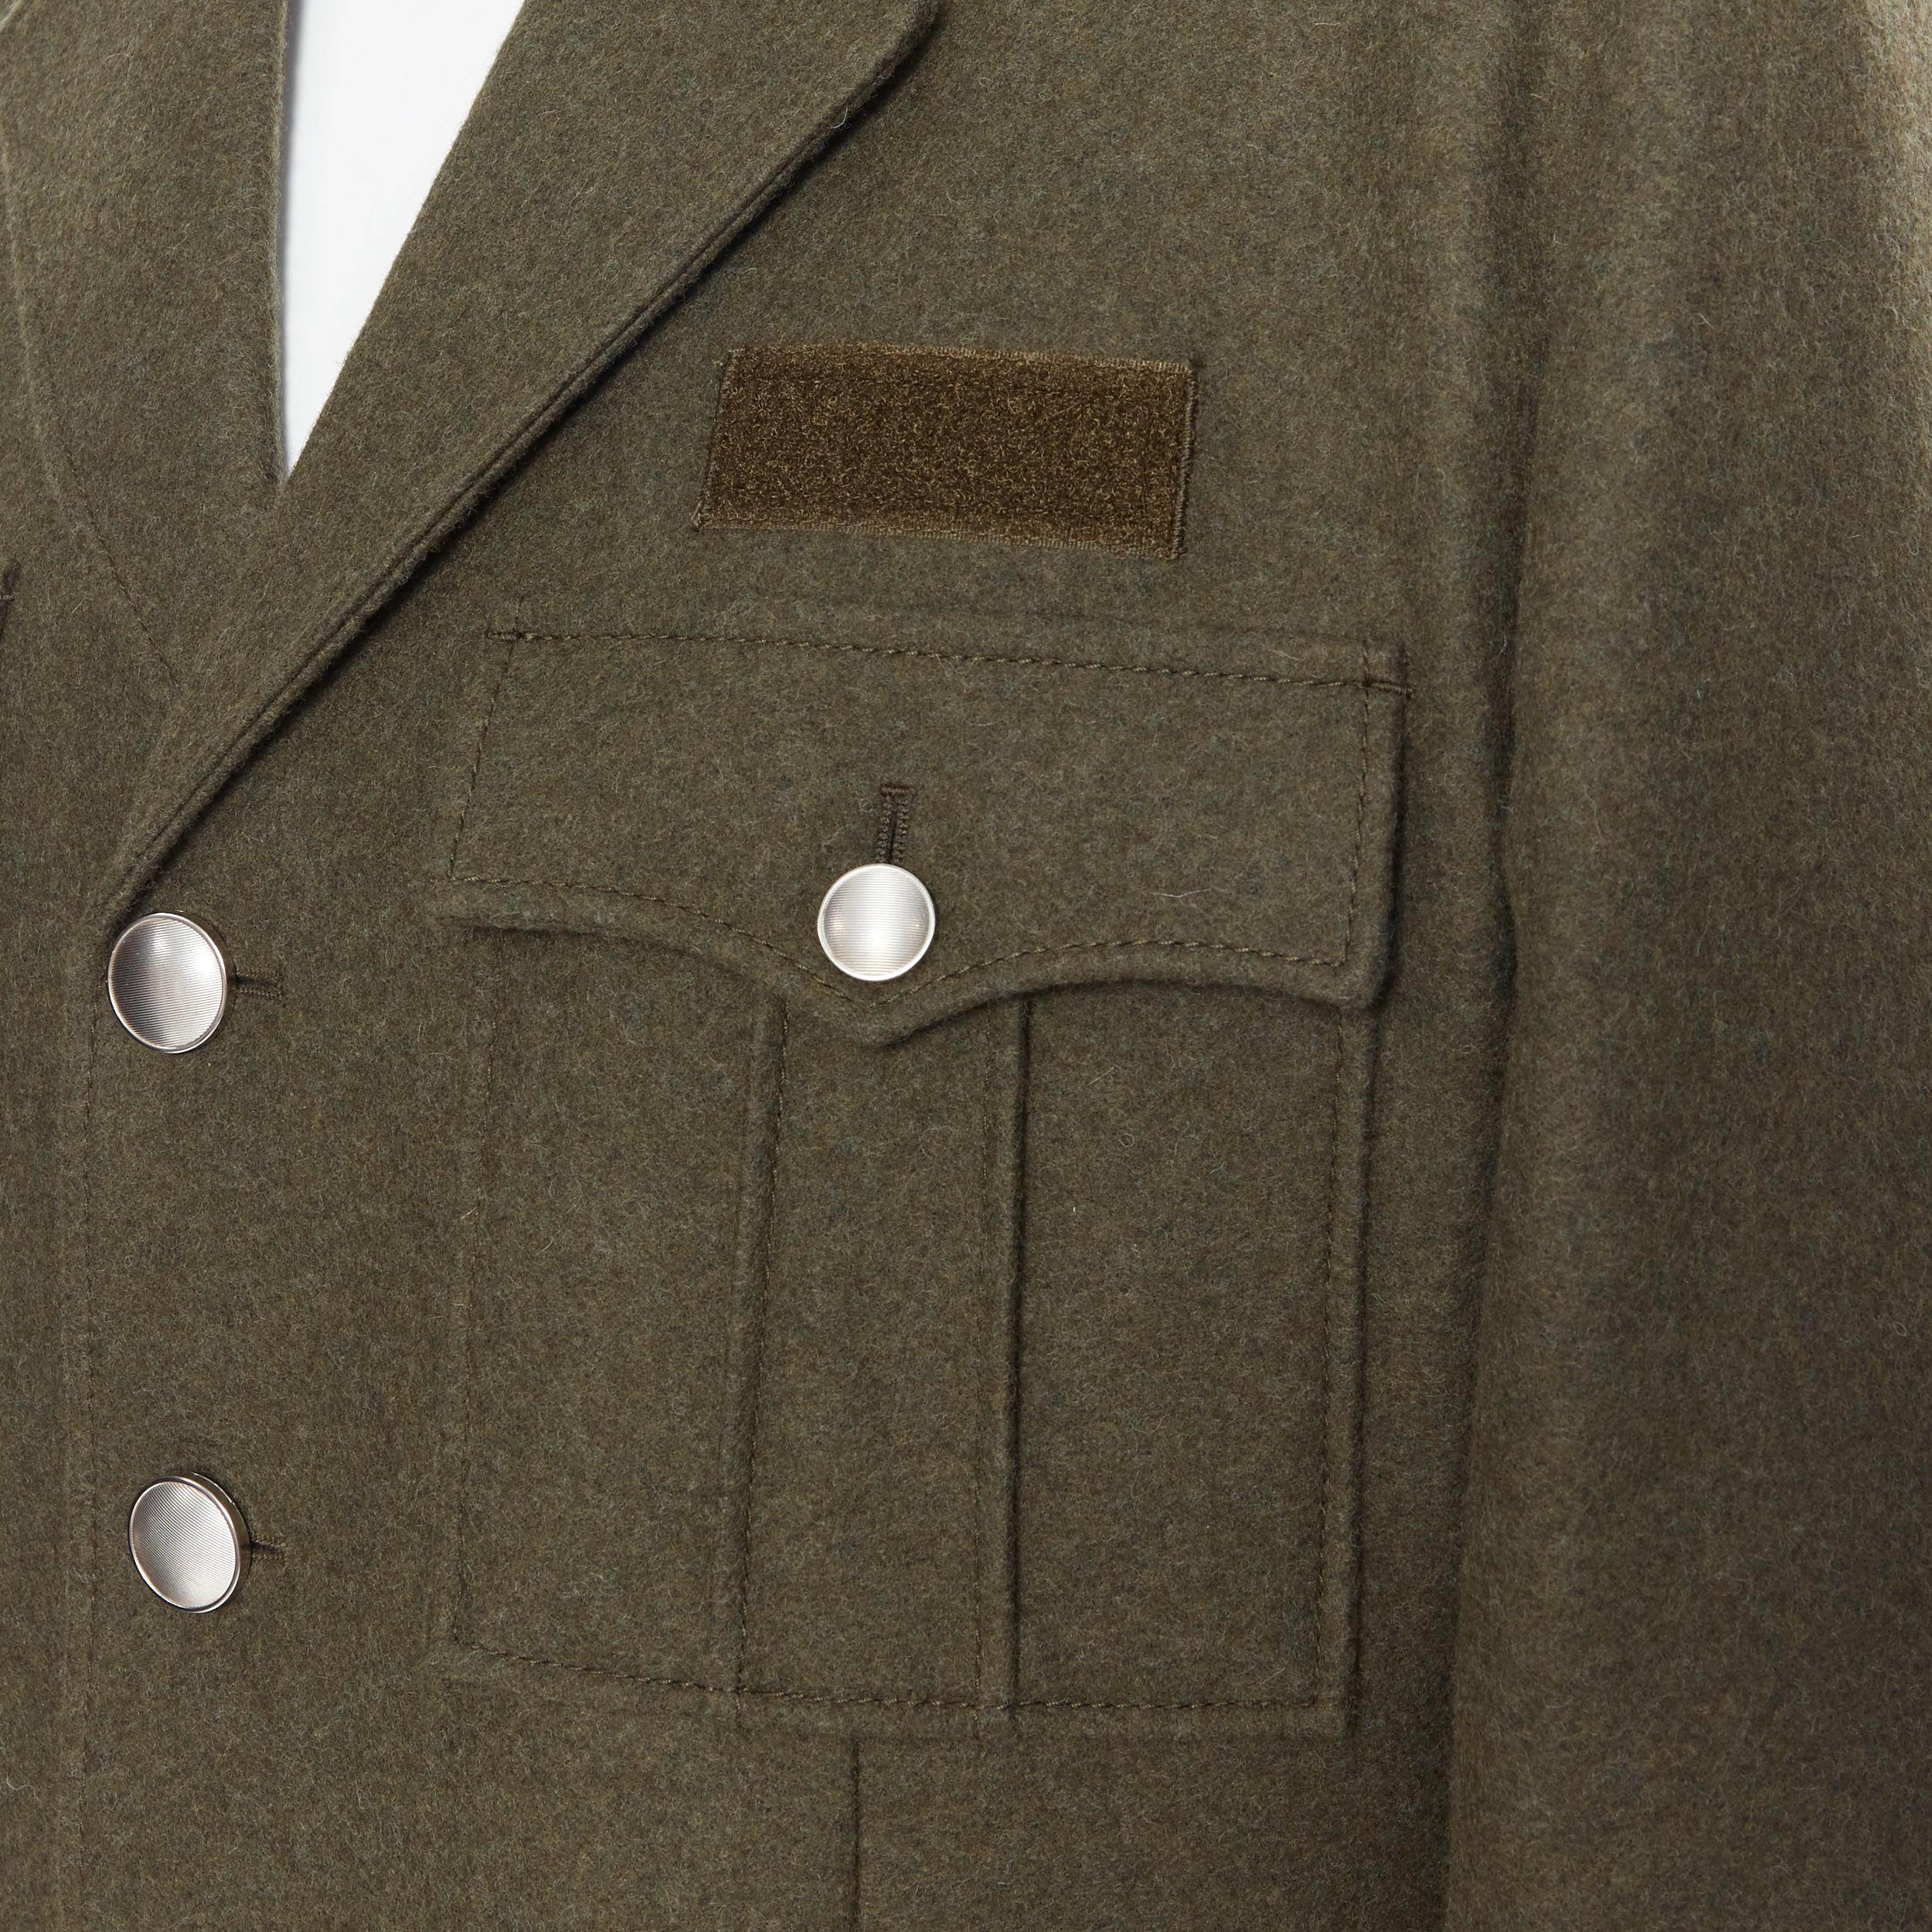 new PRADA 2019 Runway 100% virgin wool green military pocket jacket coat IT50 L
Brand: Prada
Designer: Miuccia Prada
Collection: Fall Winter 2019 Look 24
Model Name / Style: Military coat
Material: Wool
Color: Green
Pattern: Solid
Closure: